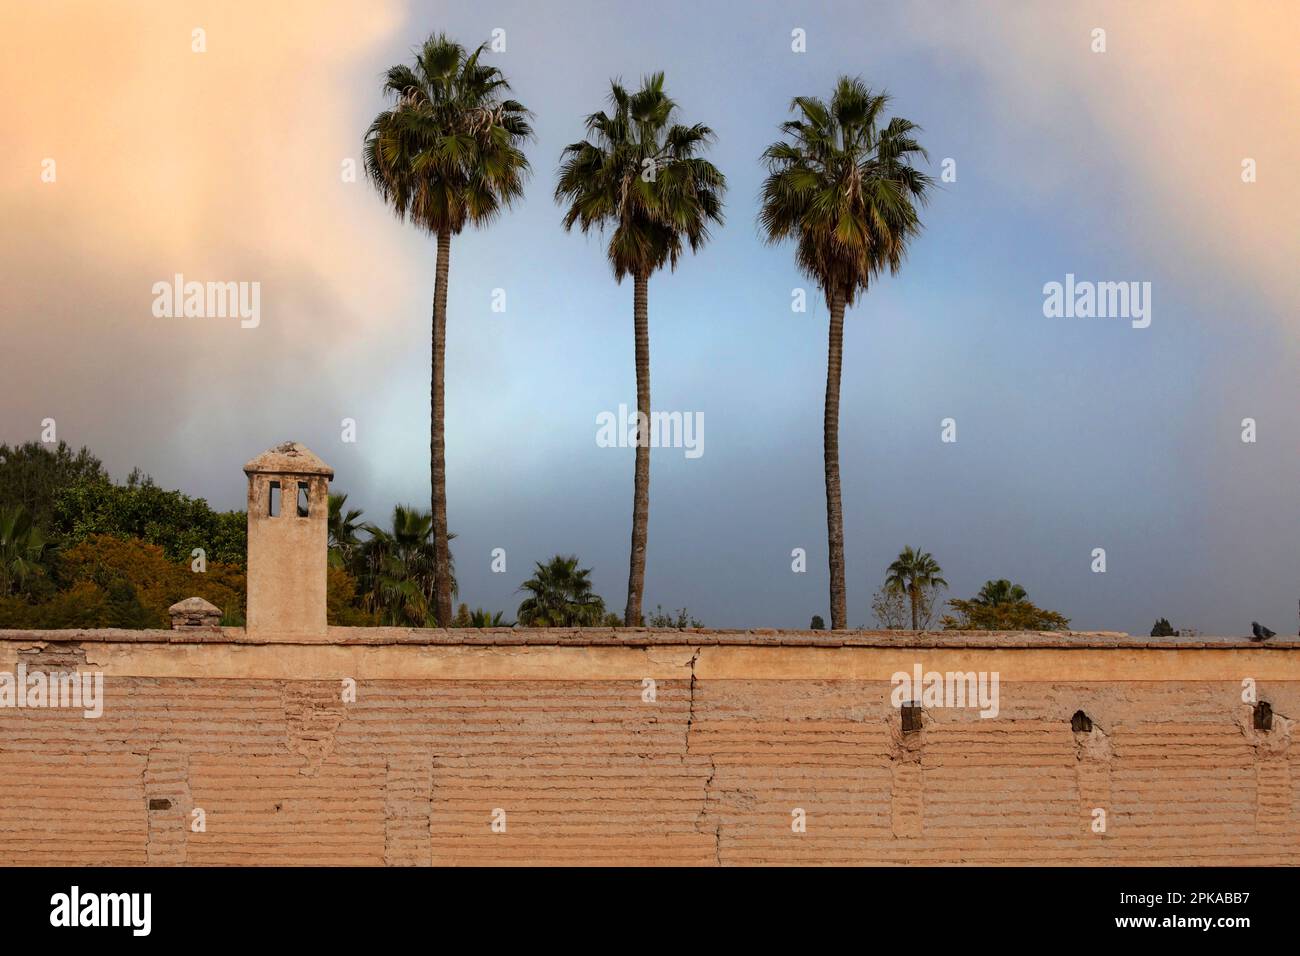 Marocco, Marrakech, 3 palme, muro, luce serale, medina, città vecchia Foto Stock